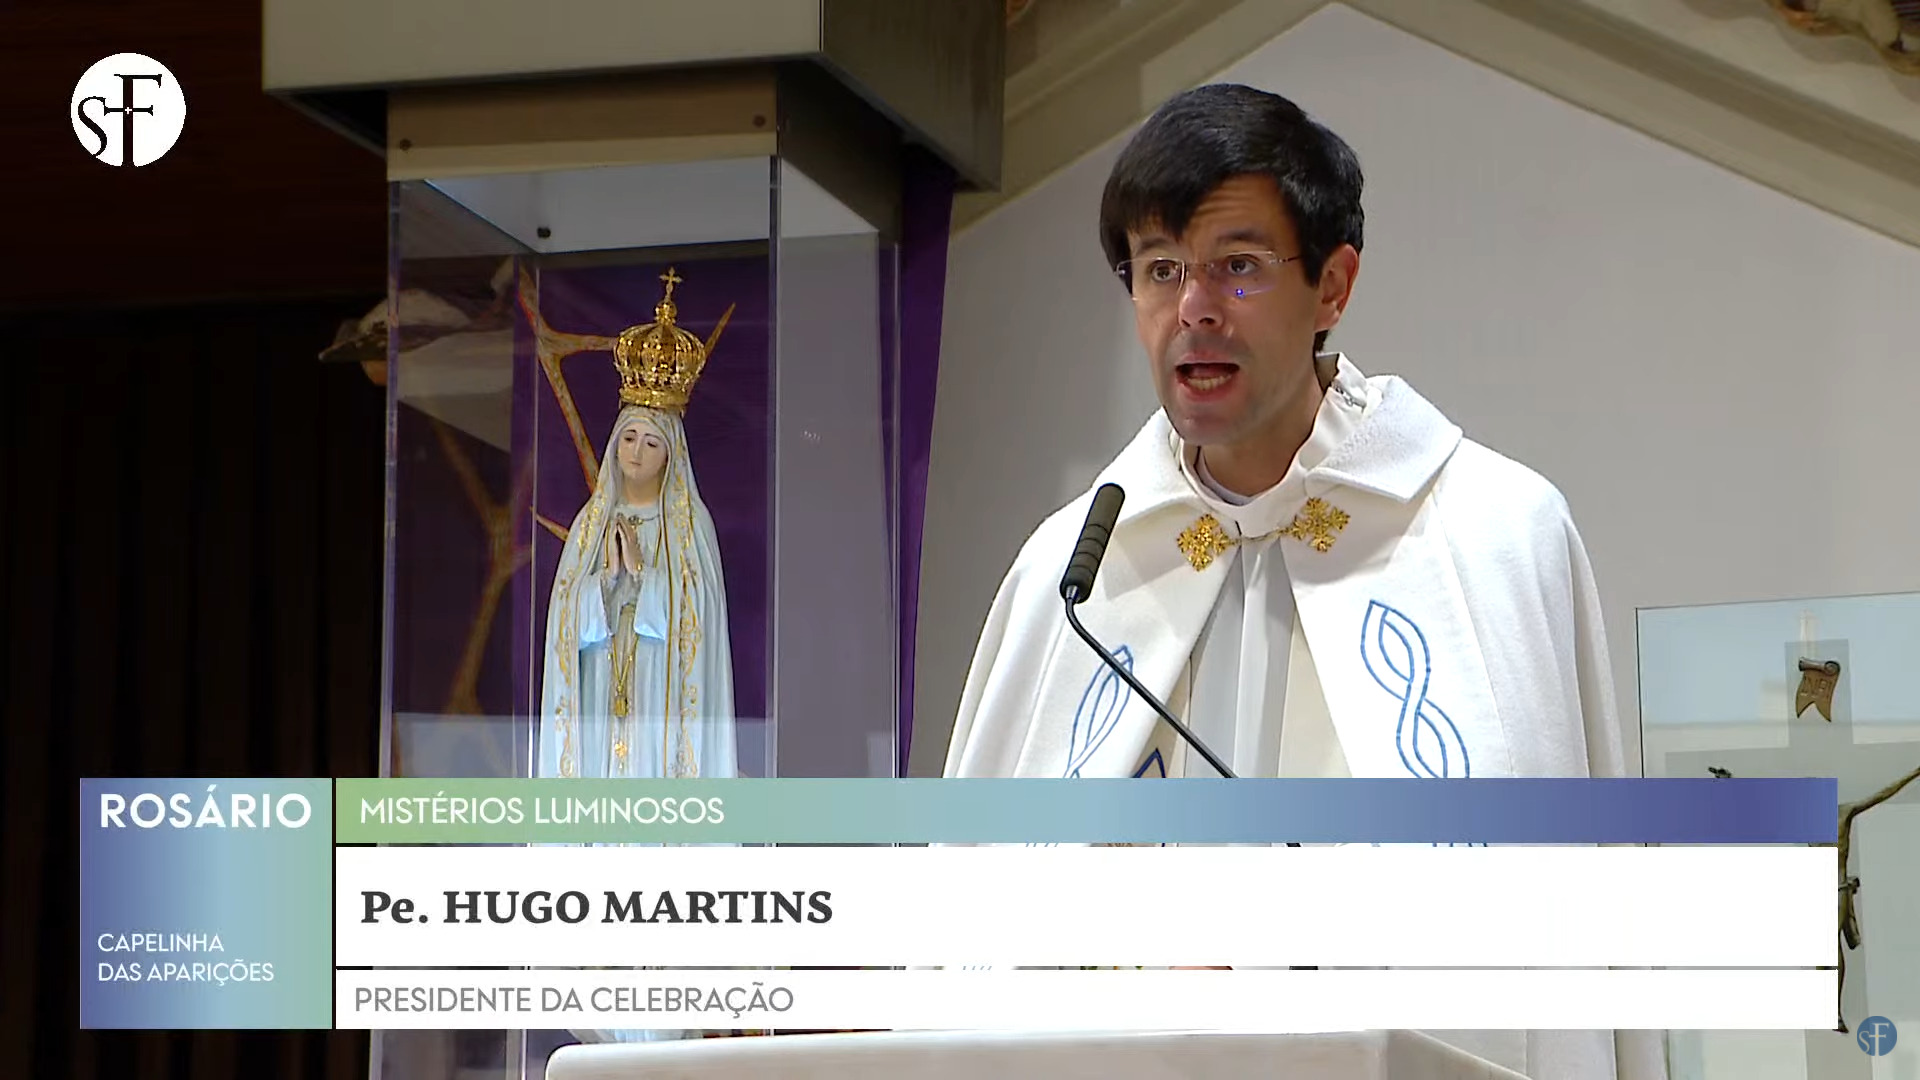 Padre Hugo Martins: 14 aniversário de sacerdote